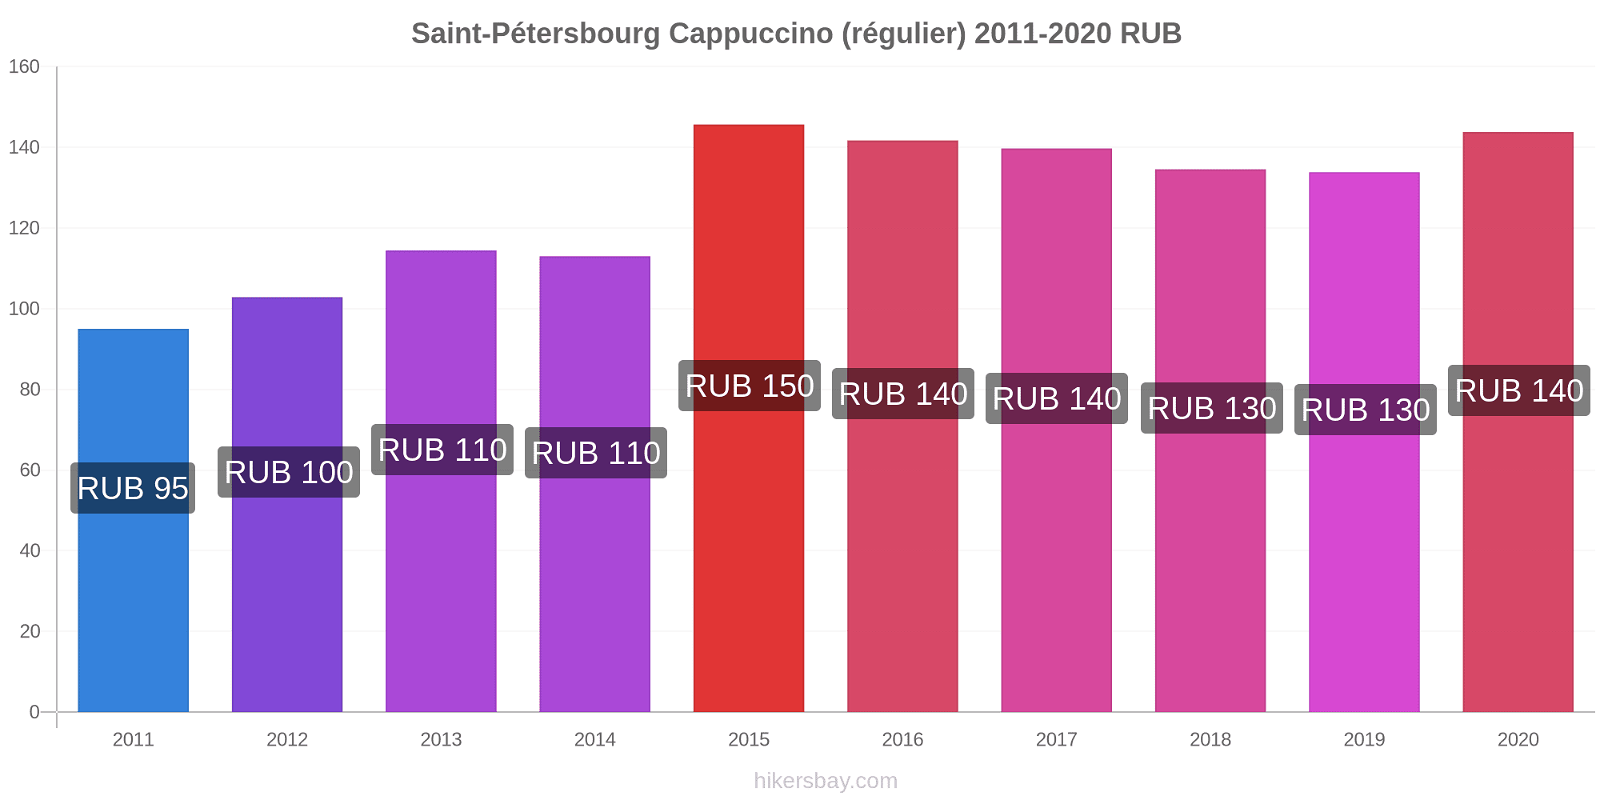 Saint-Pétersbourg changements de prix Cappuccino (régulier) hikersbay.com